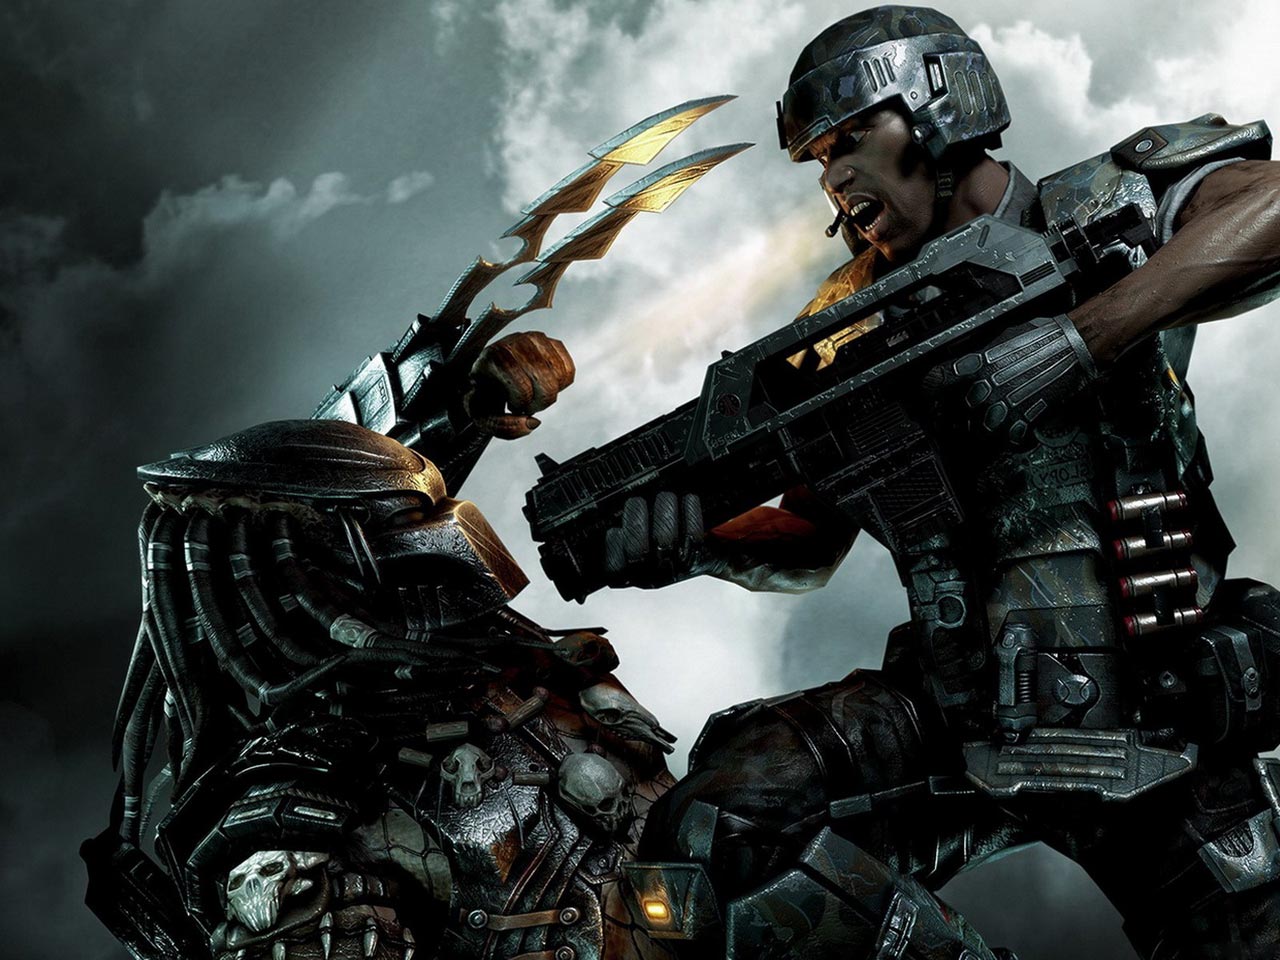 Review game: Free Download Games Aliens Versus Predator 2